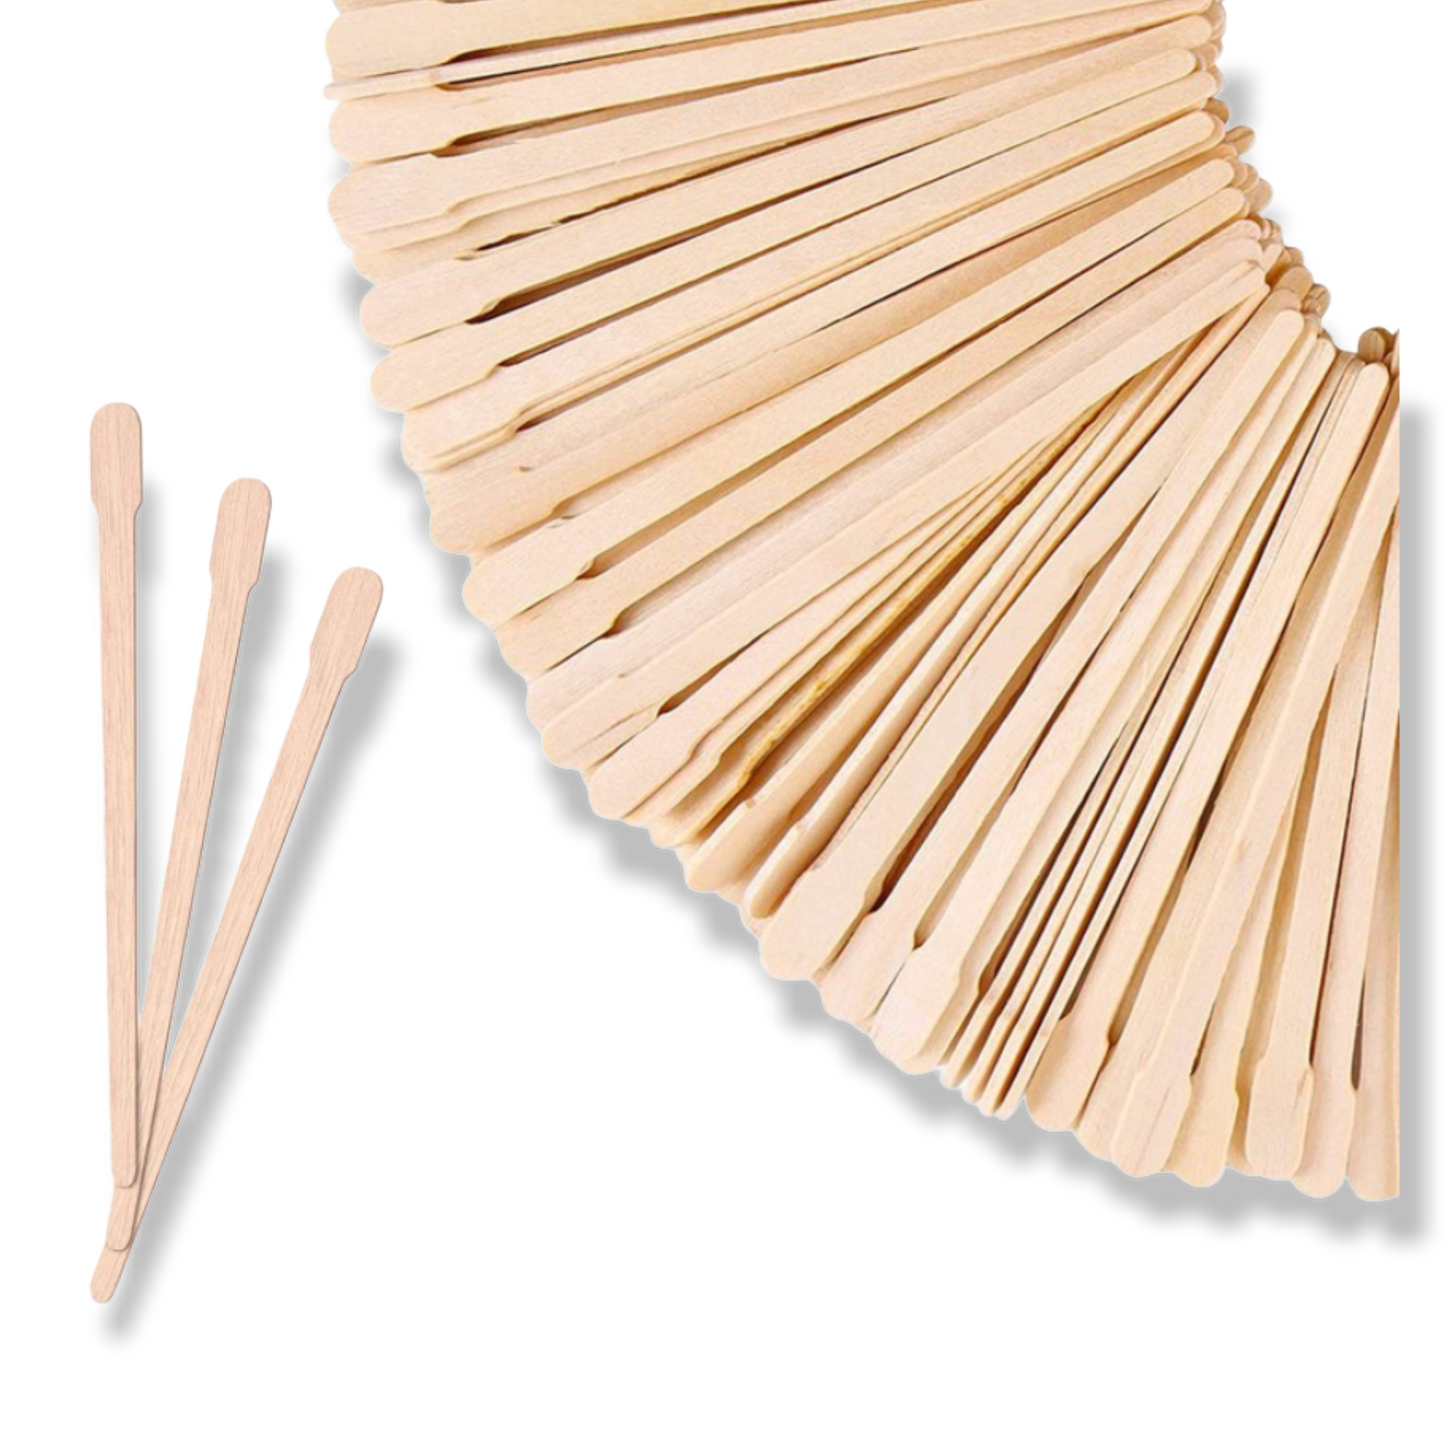 Small Wooden Wax Sticks (10 pcs )